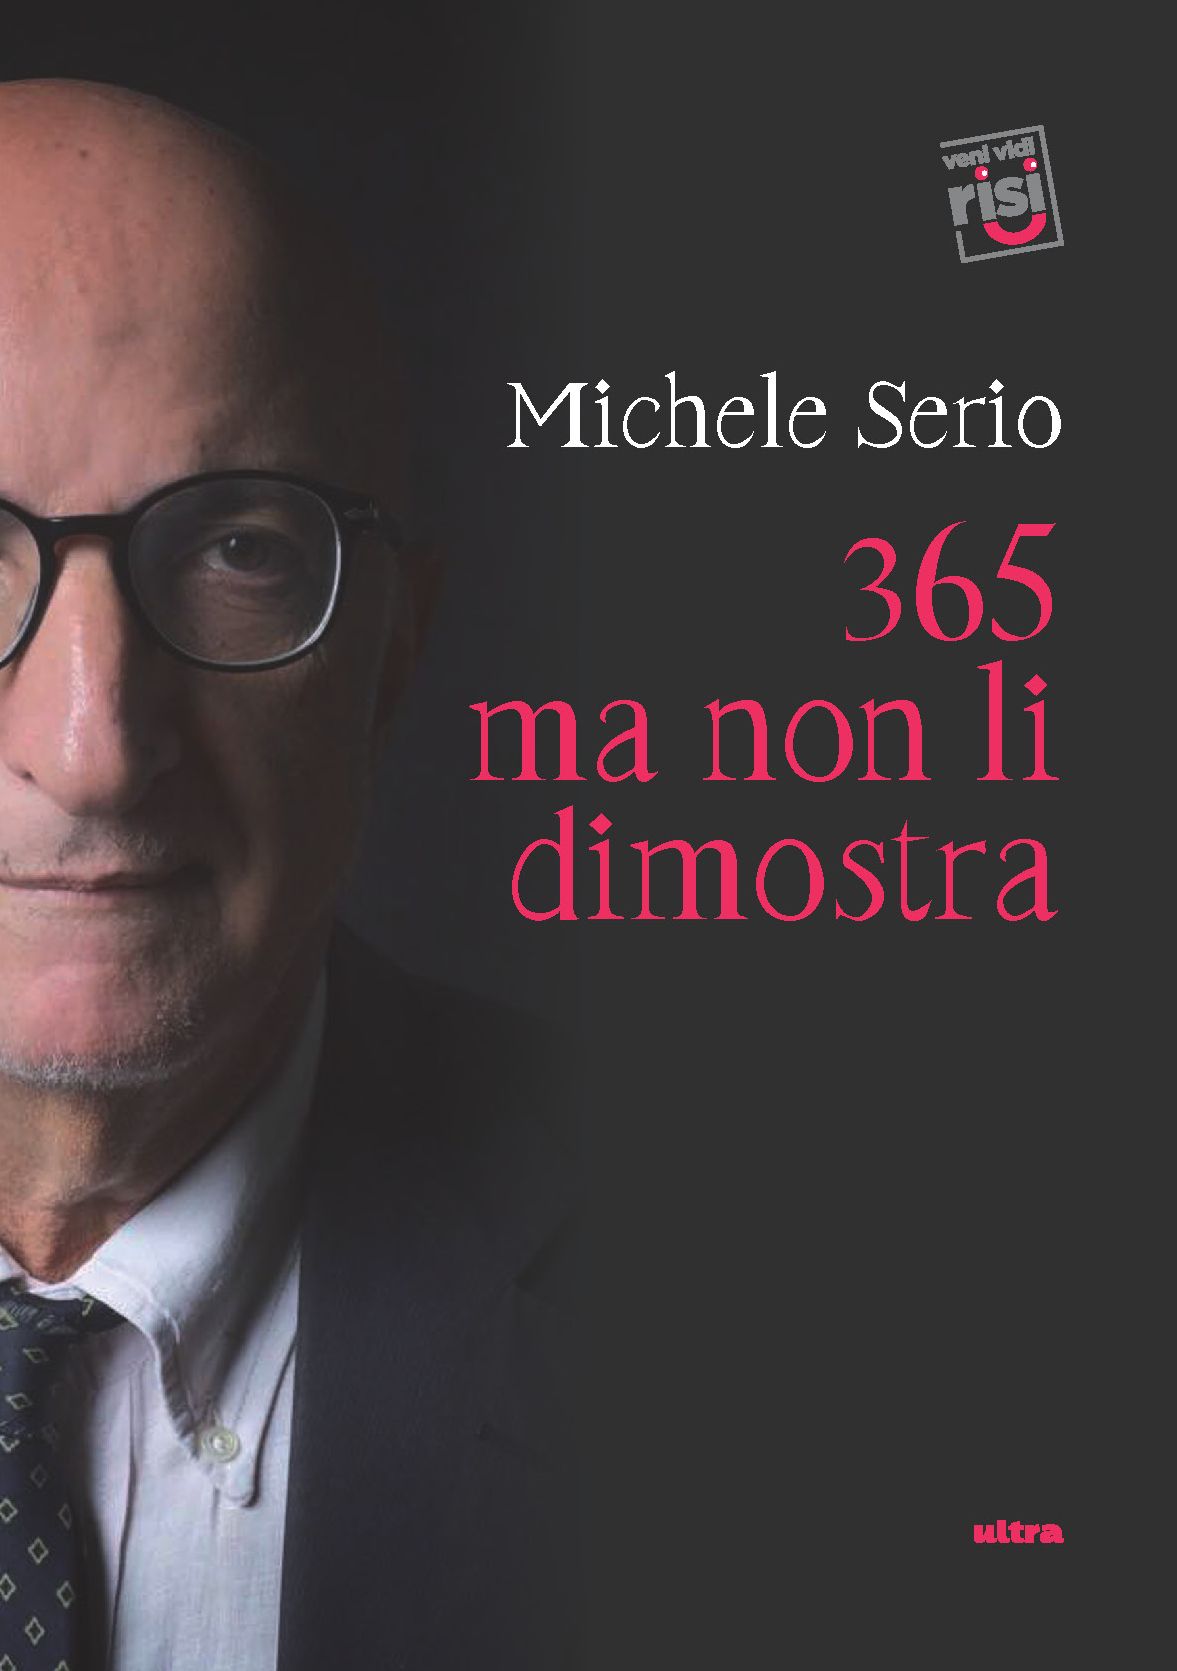 ‘365 ma non li dimostra’, il nuovo lavoro editoriale di Michele Serio